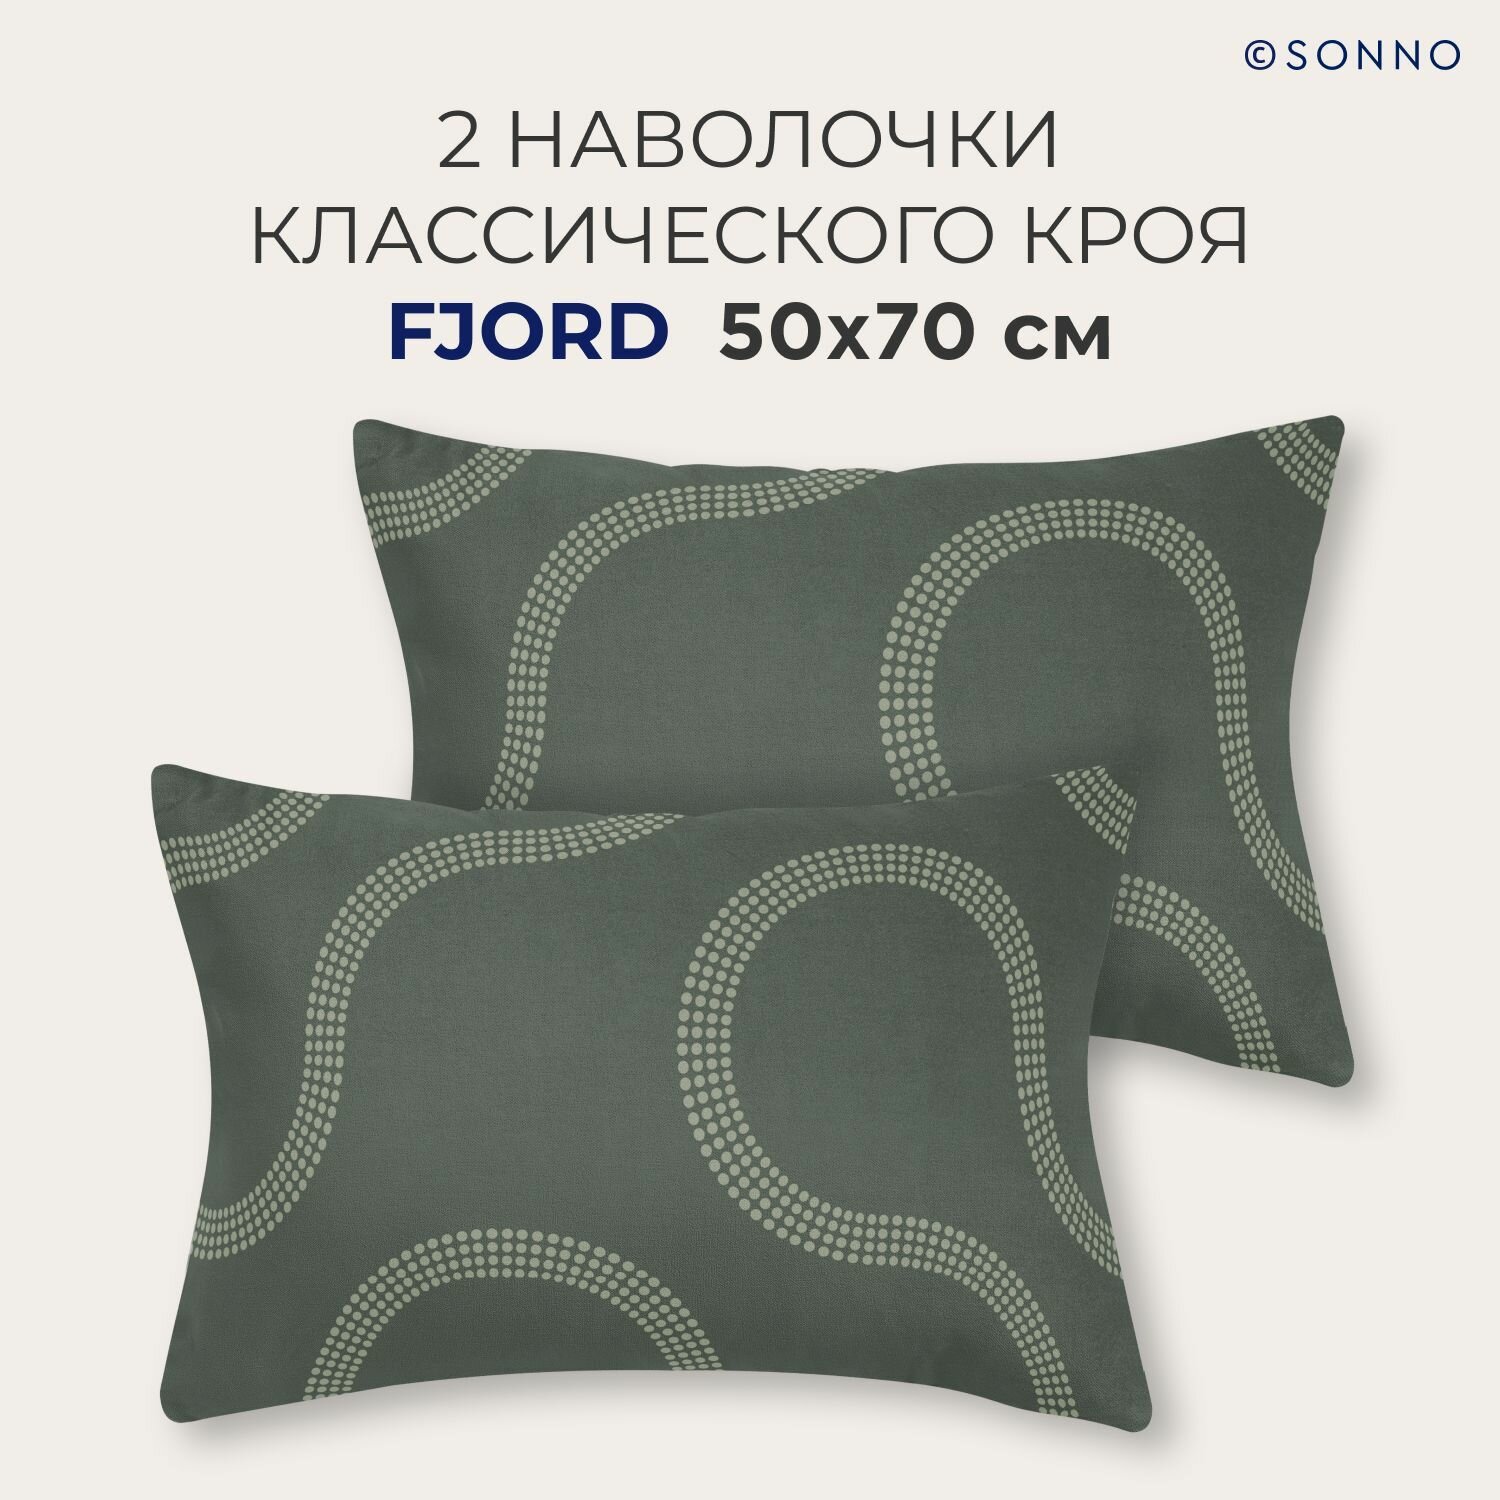 Комплект постельного белья SONNO FJORD евро-размер цвет Фьорд, Оливковый - фотография № 3